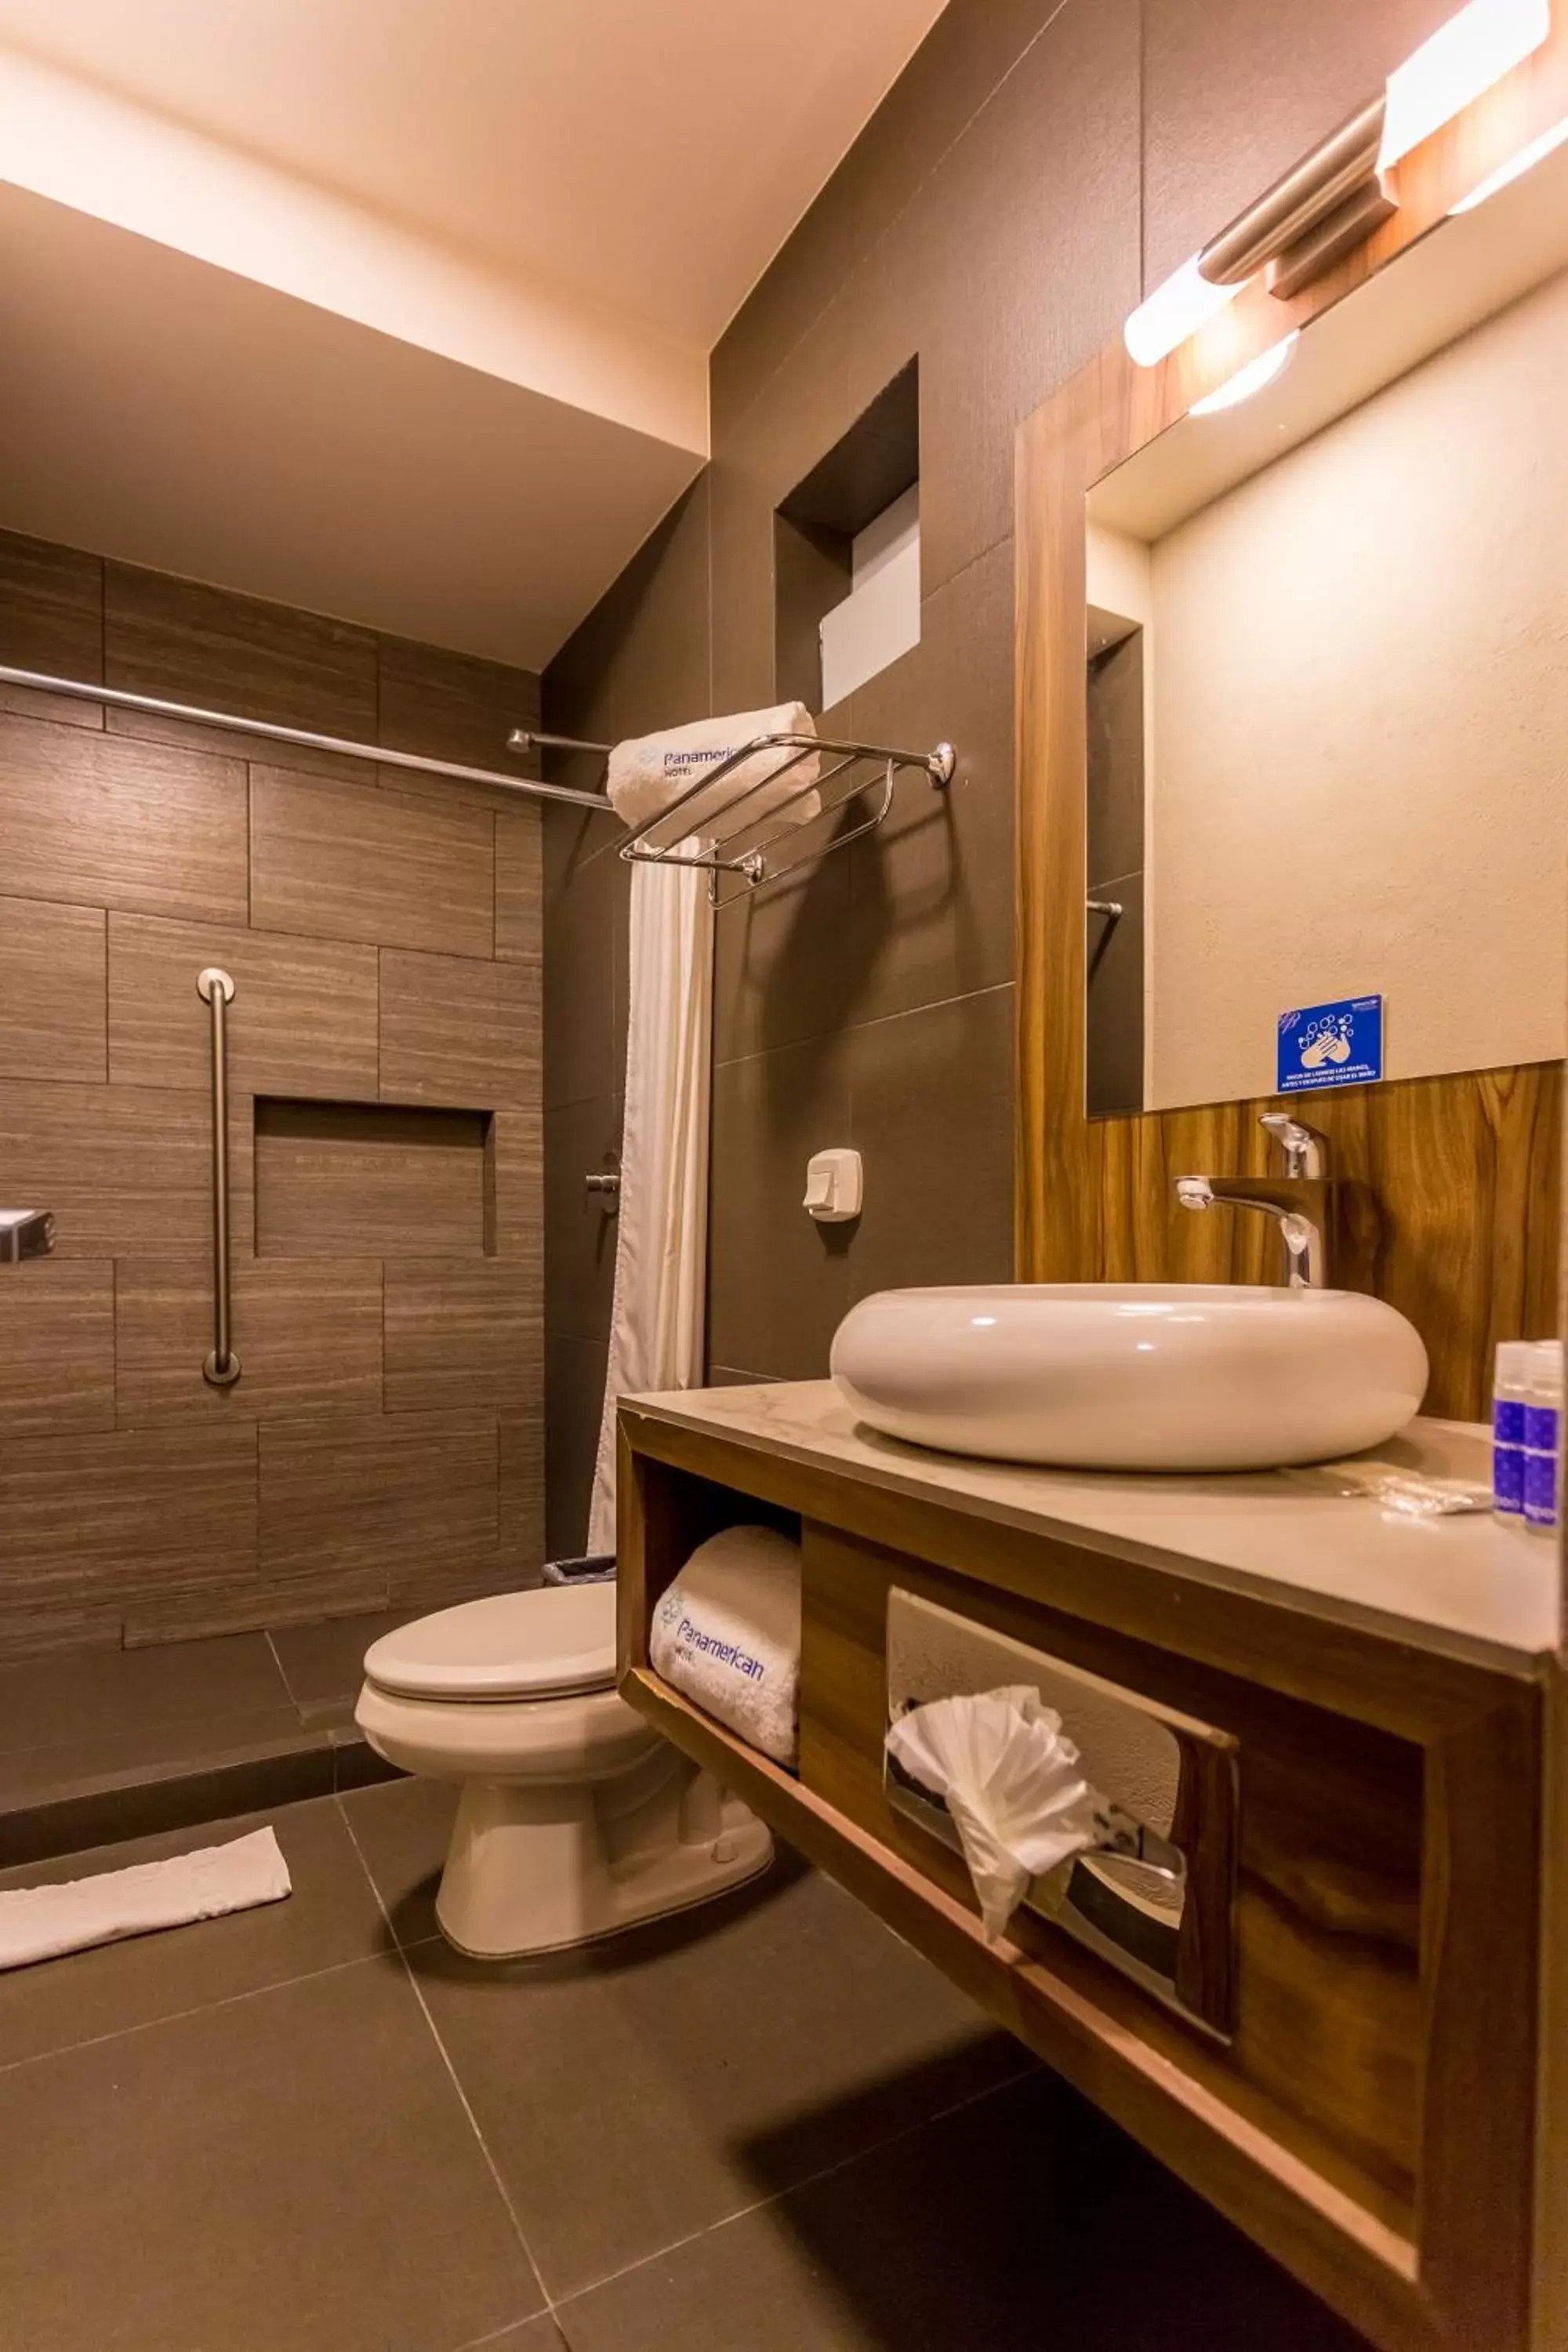 Bathroom in Hotel Panamerican